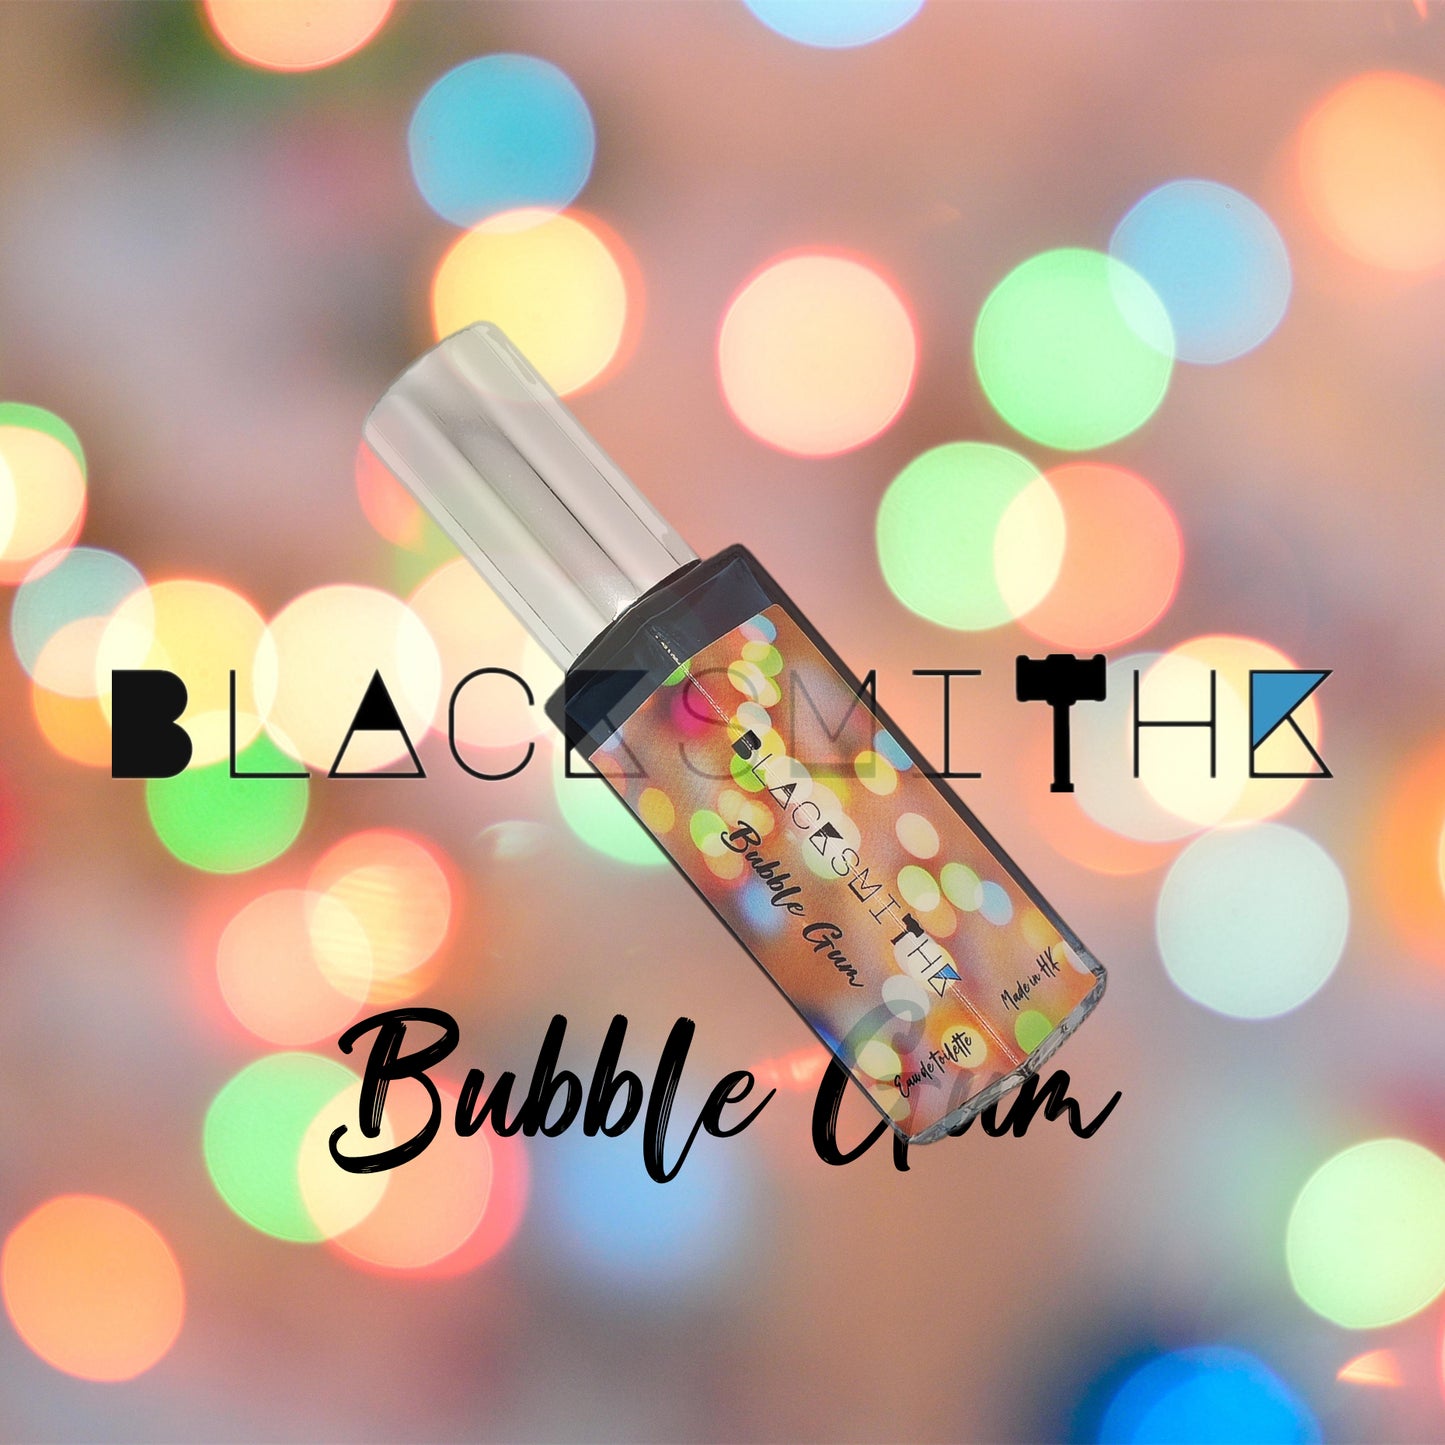 Bubble Gum Perfume